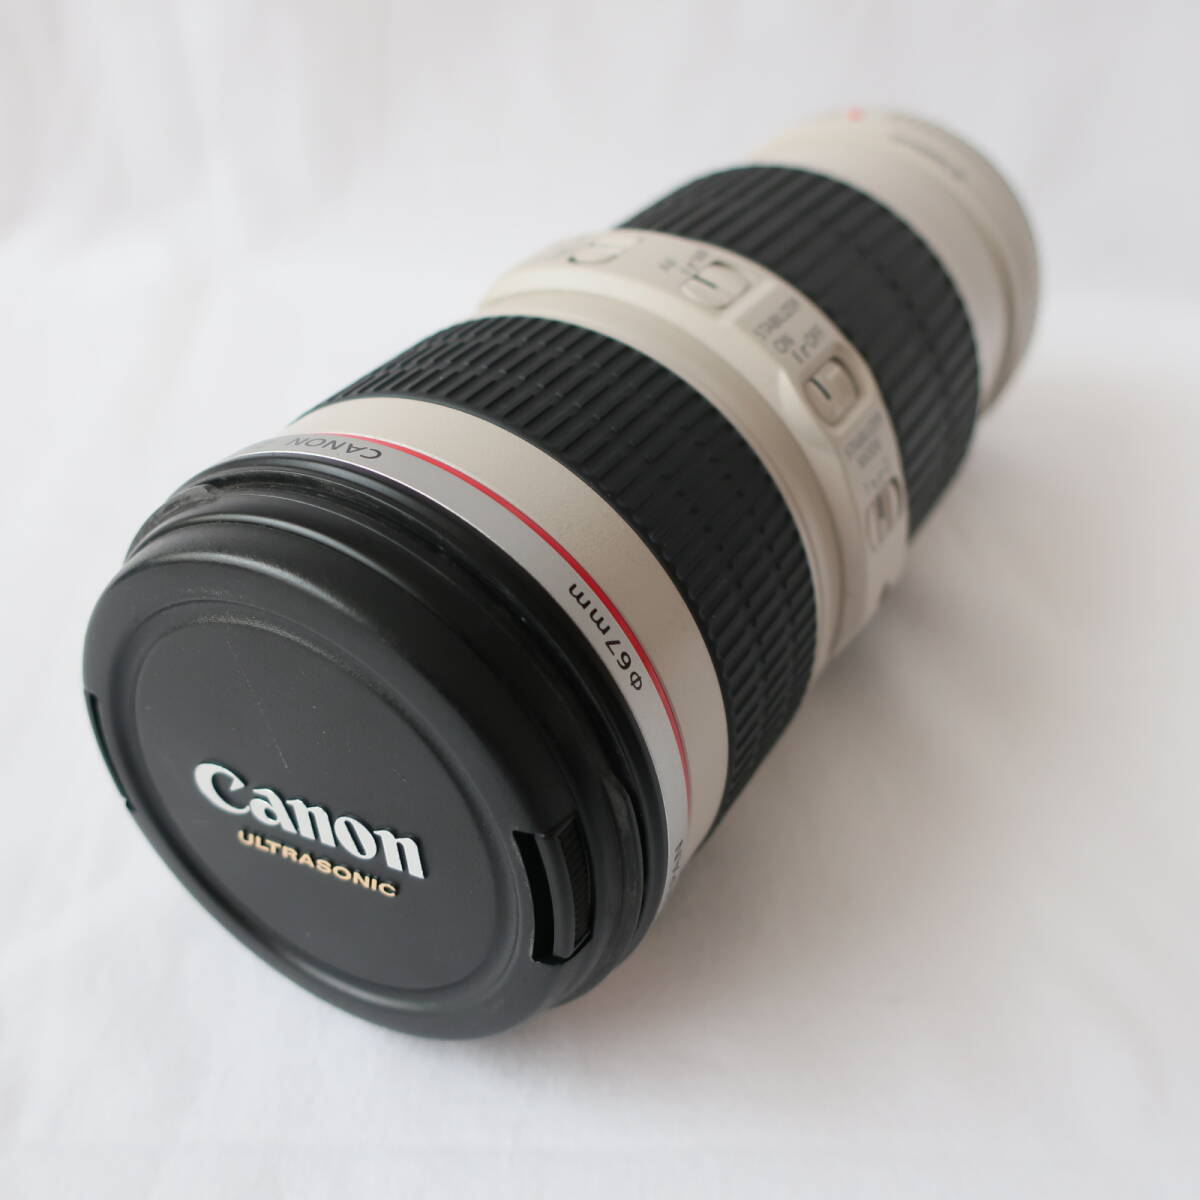 キヤノン 望遠ズームレンズ Canon EF70-200mm F4L IS USM 箱付き美品の画像6